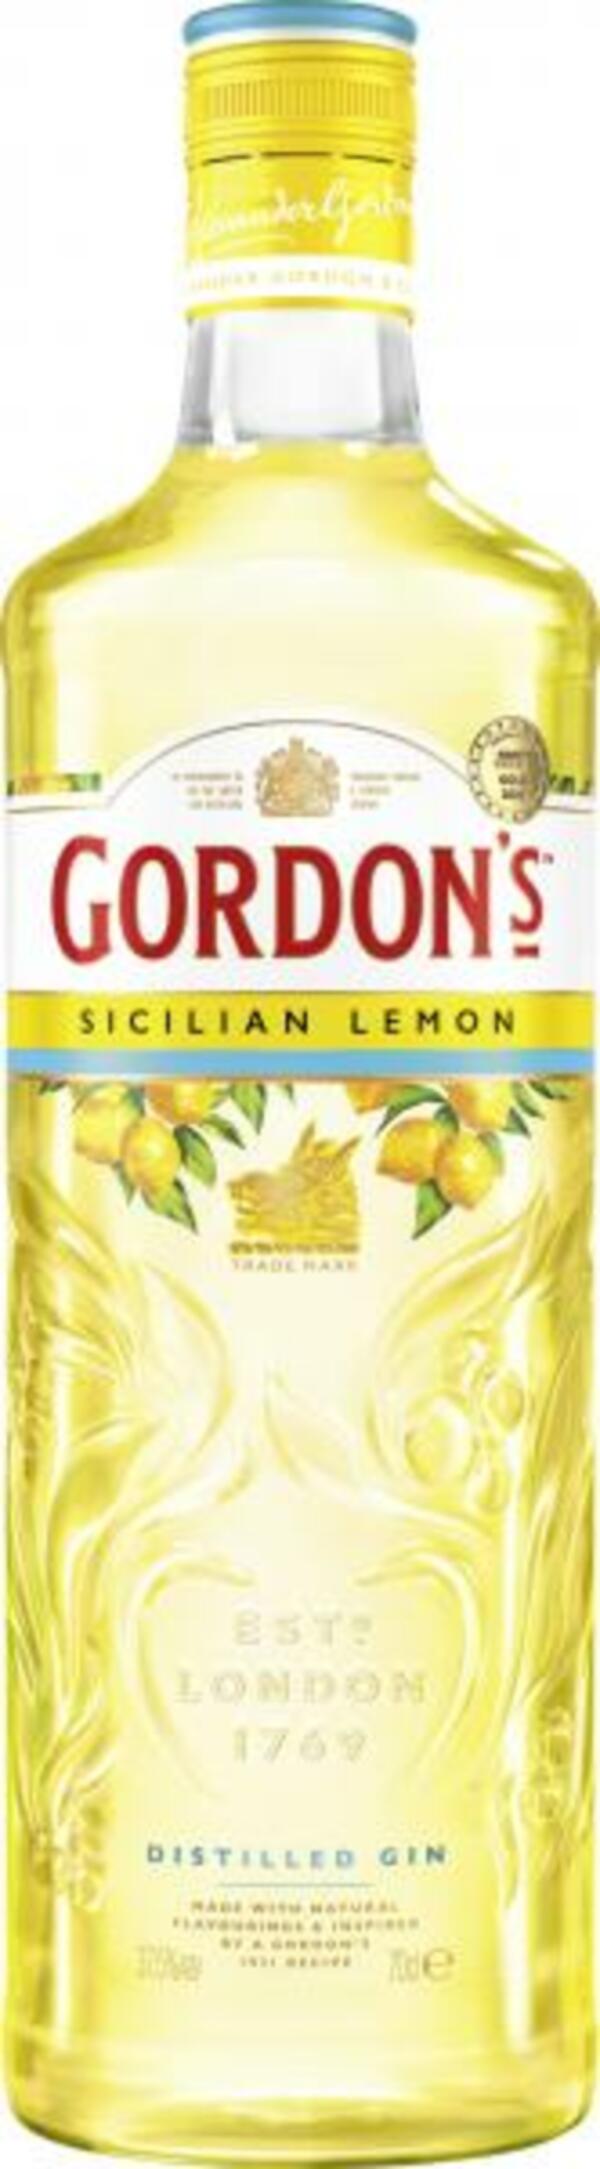 Bild 1 von Gordon's Sicilian Lemon Gin